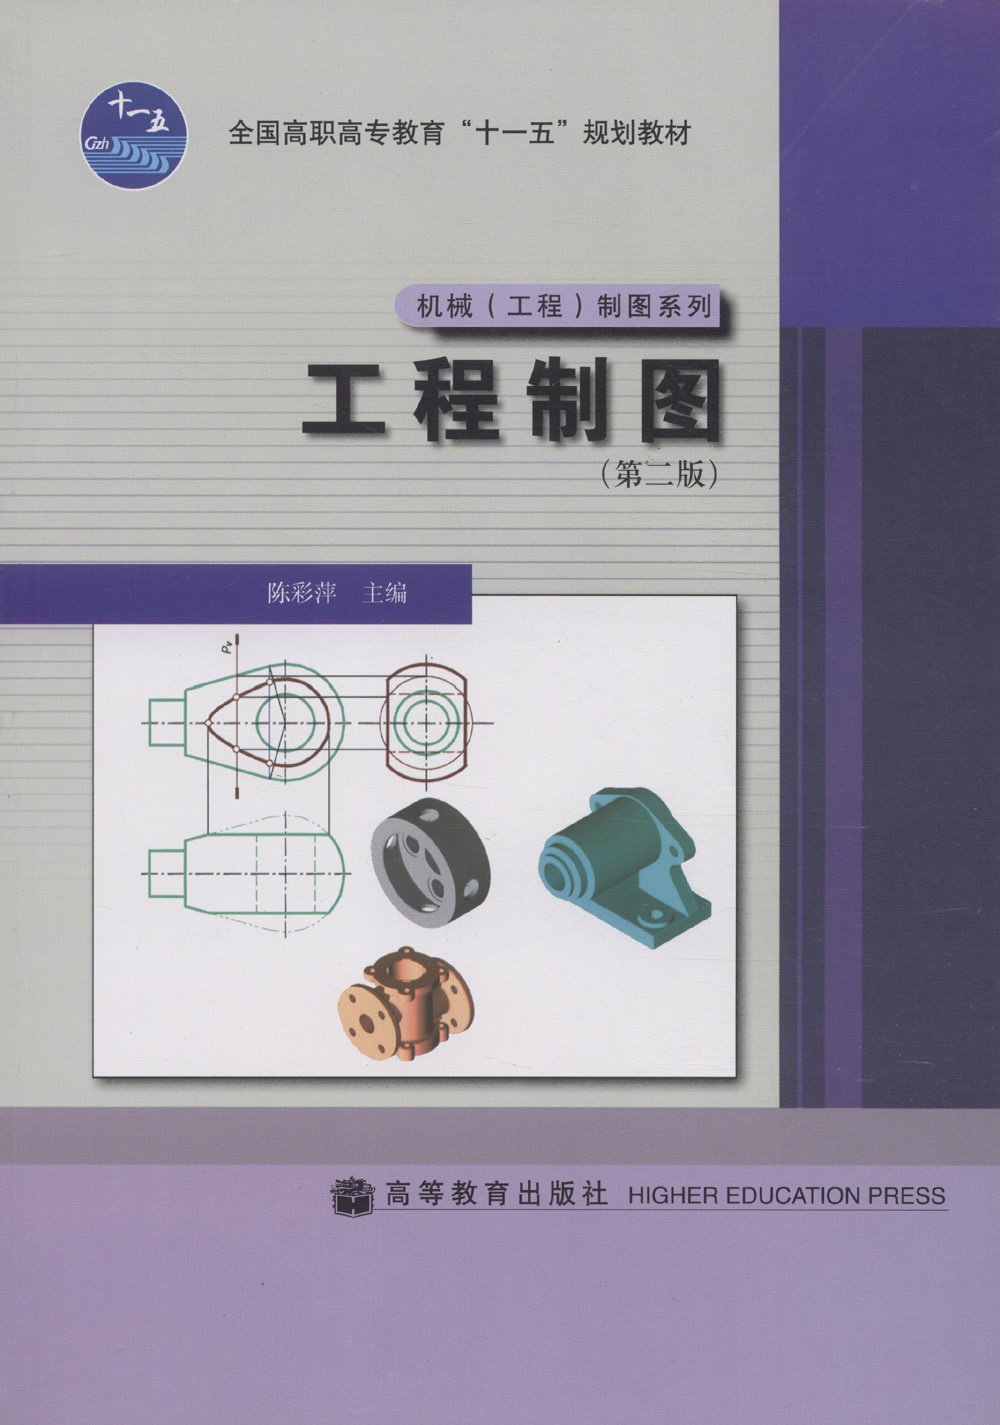 工程製圖（第二版）(2008年高等教育出版社出版的圖書)